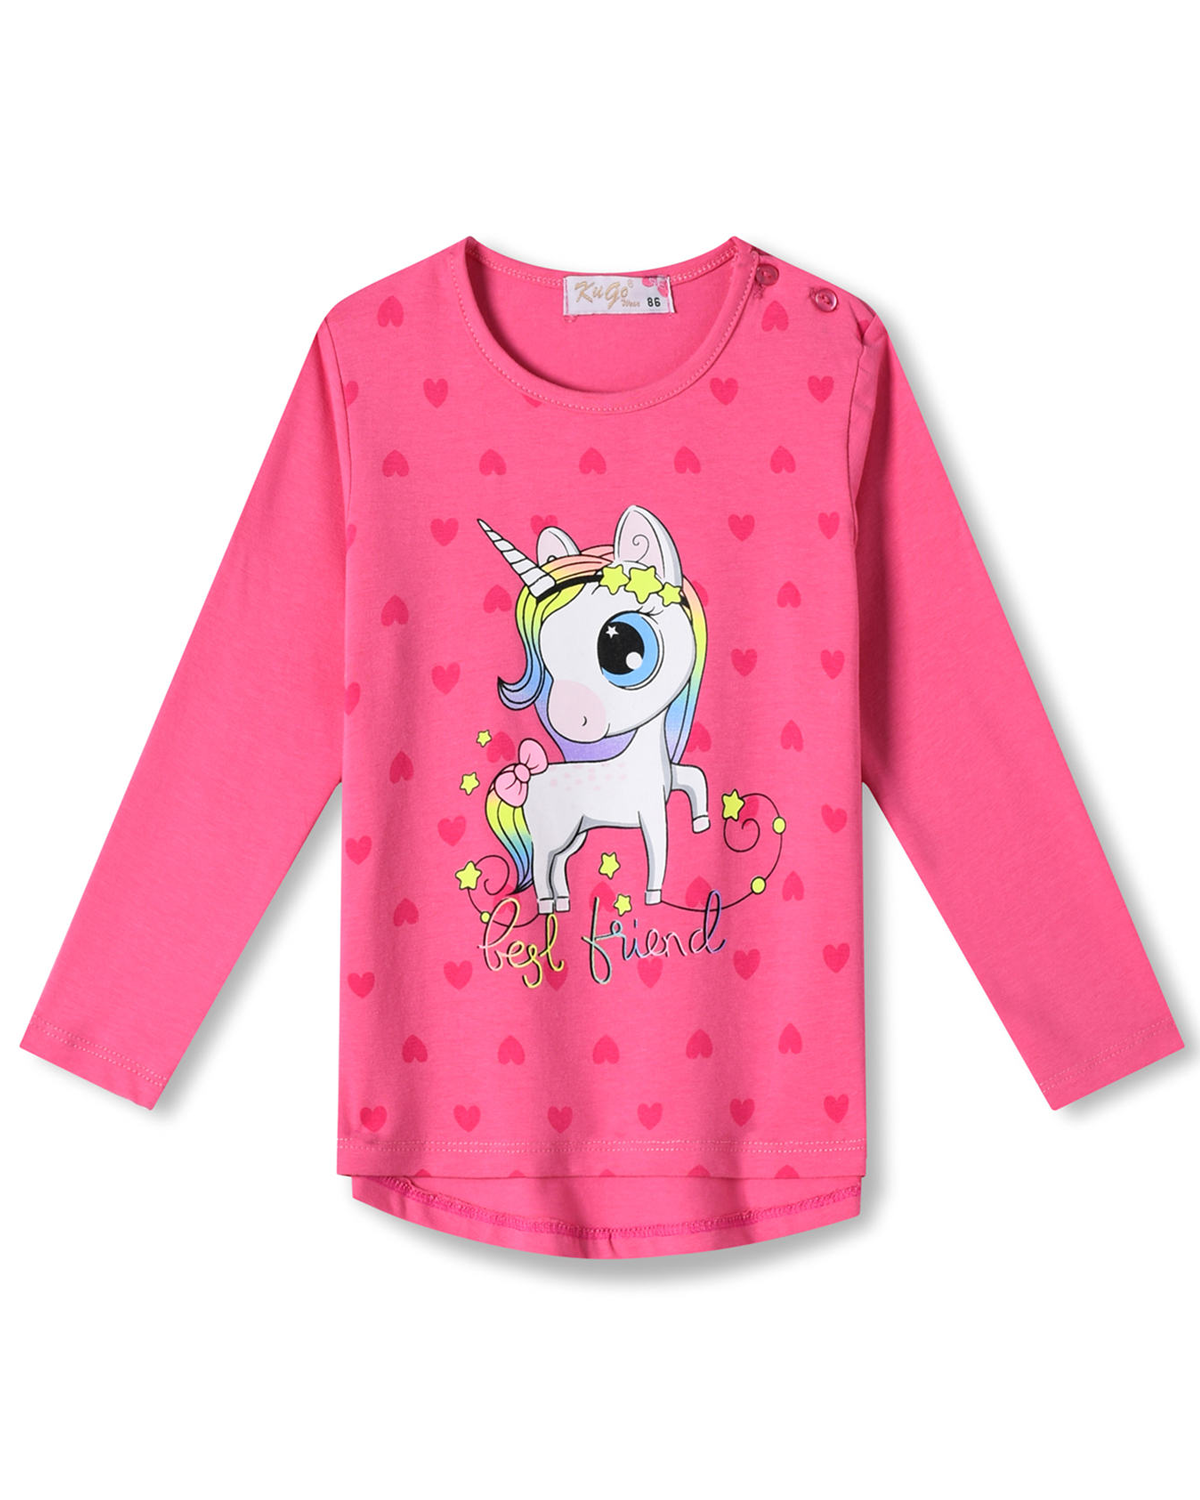 Dívčí tričko - KUGO HC0746, sytě růžová Barva: Růžová tmavší, Velikost: 104